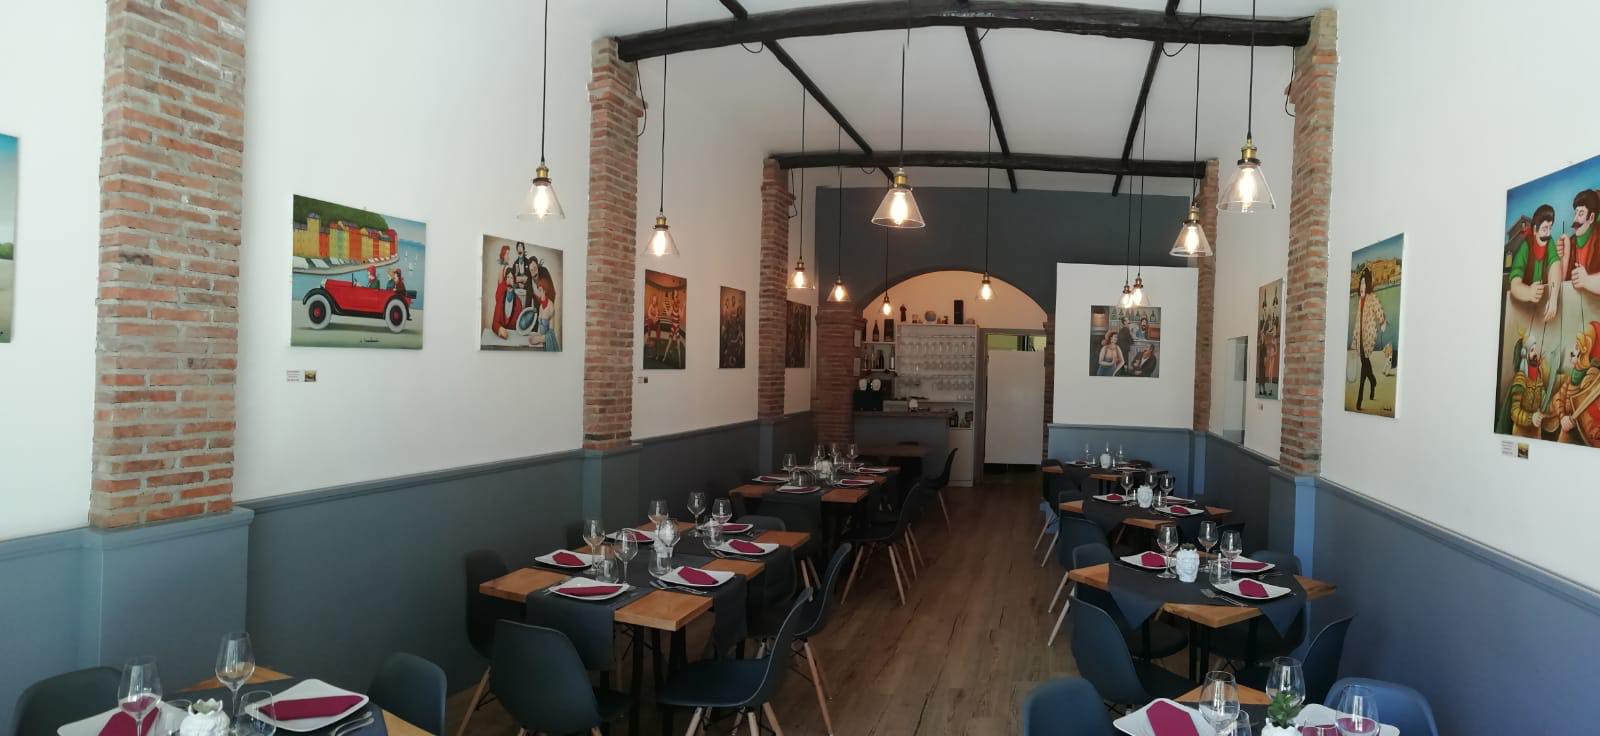 Dove mangiare a Milazzo, 8 ristoranti consigliati a Milazzo, Ristorante, Ristorante Settiti e Mancia, Interni, Arredi